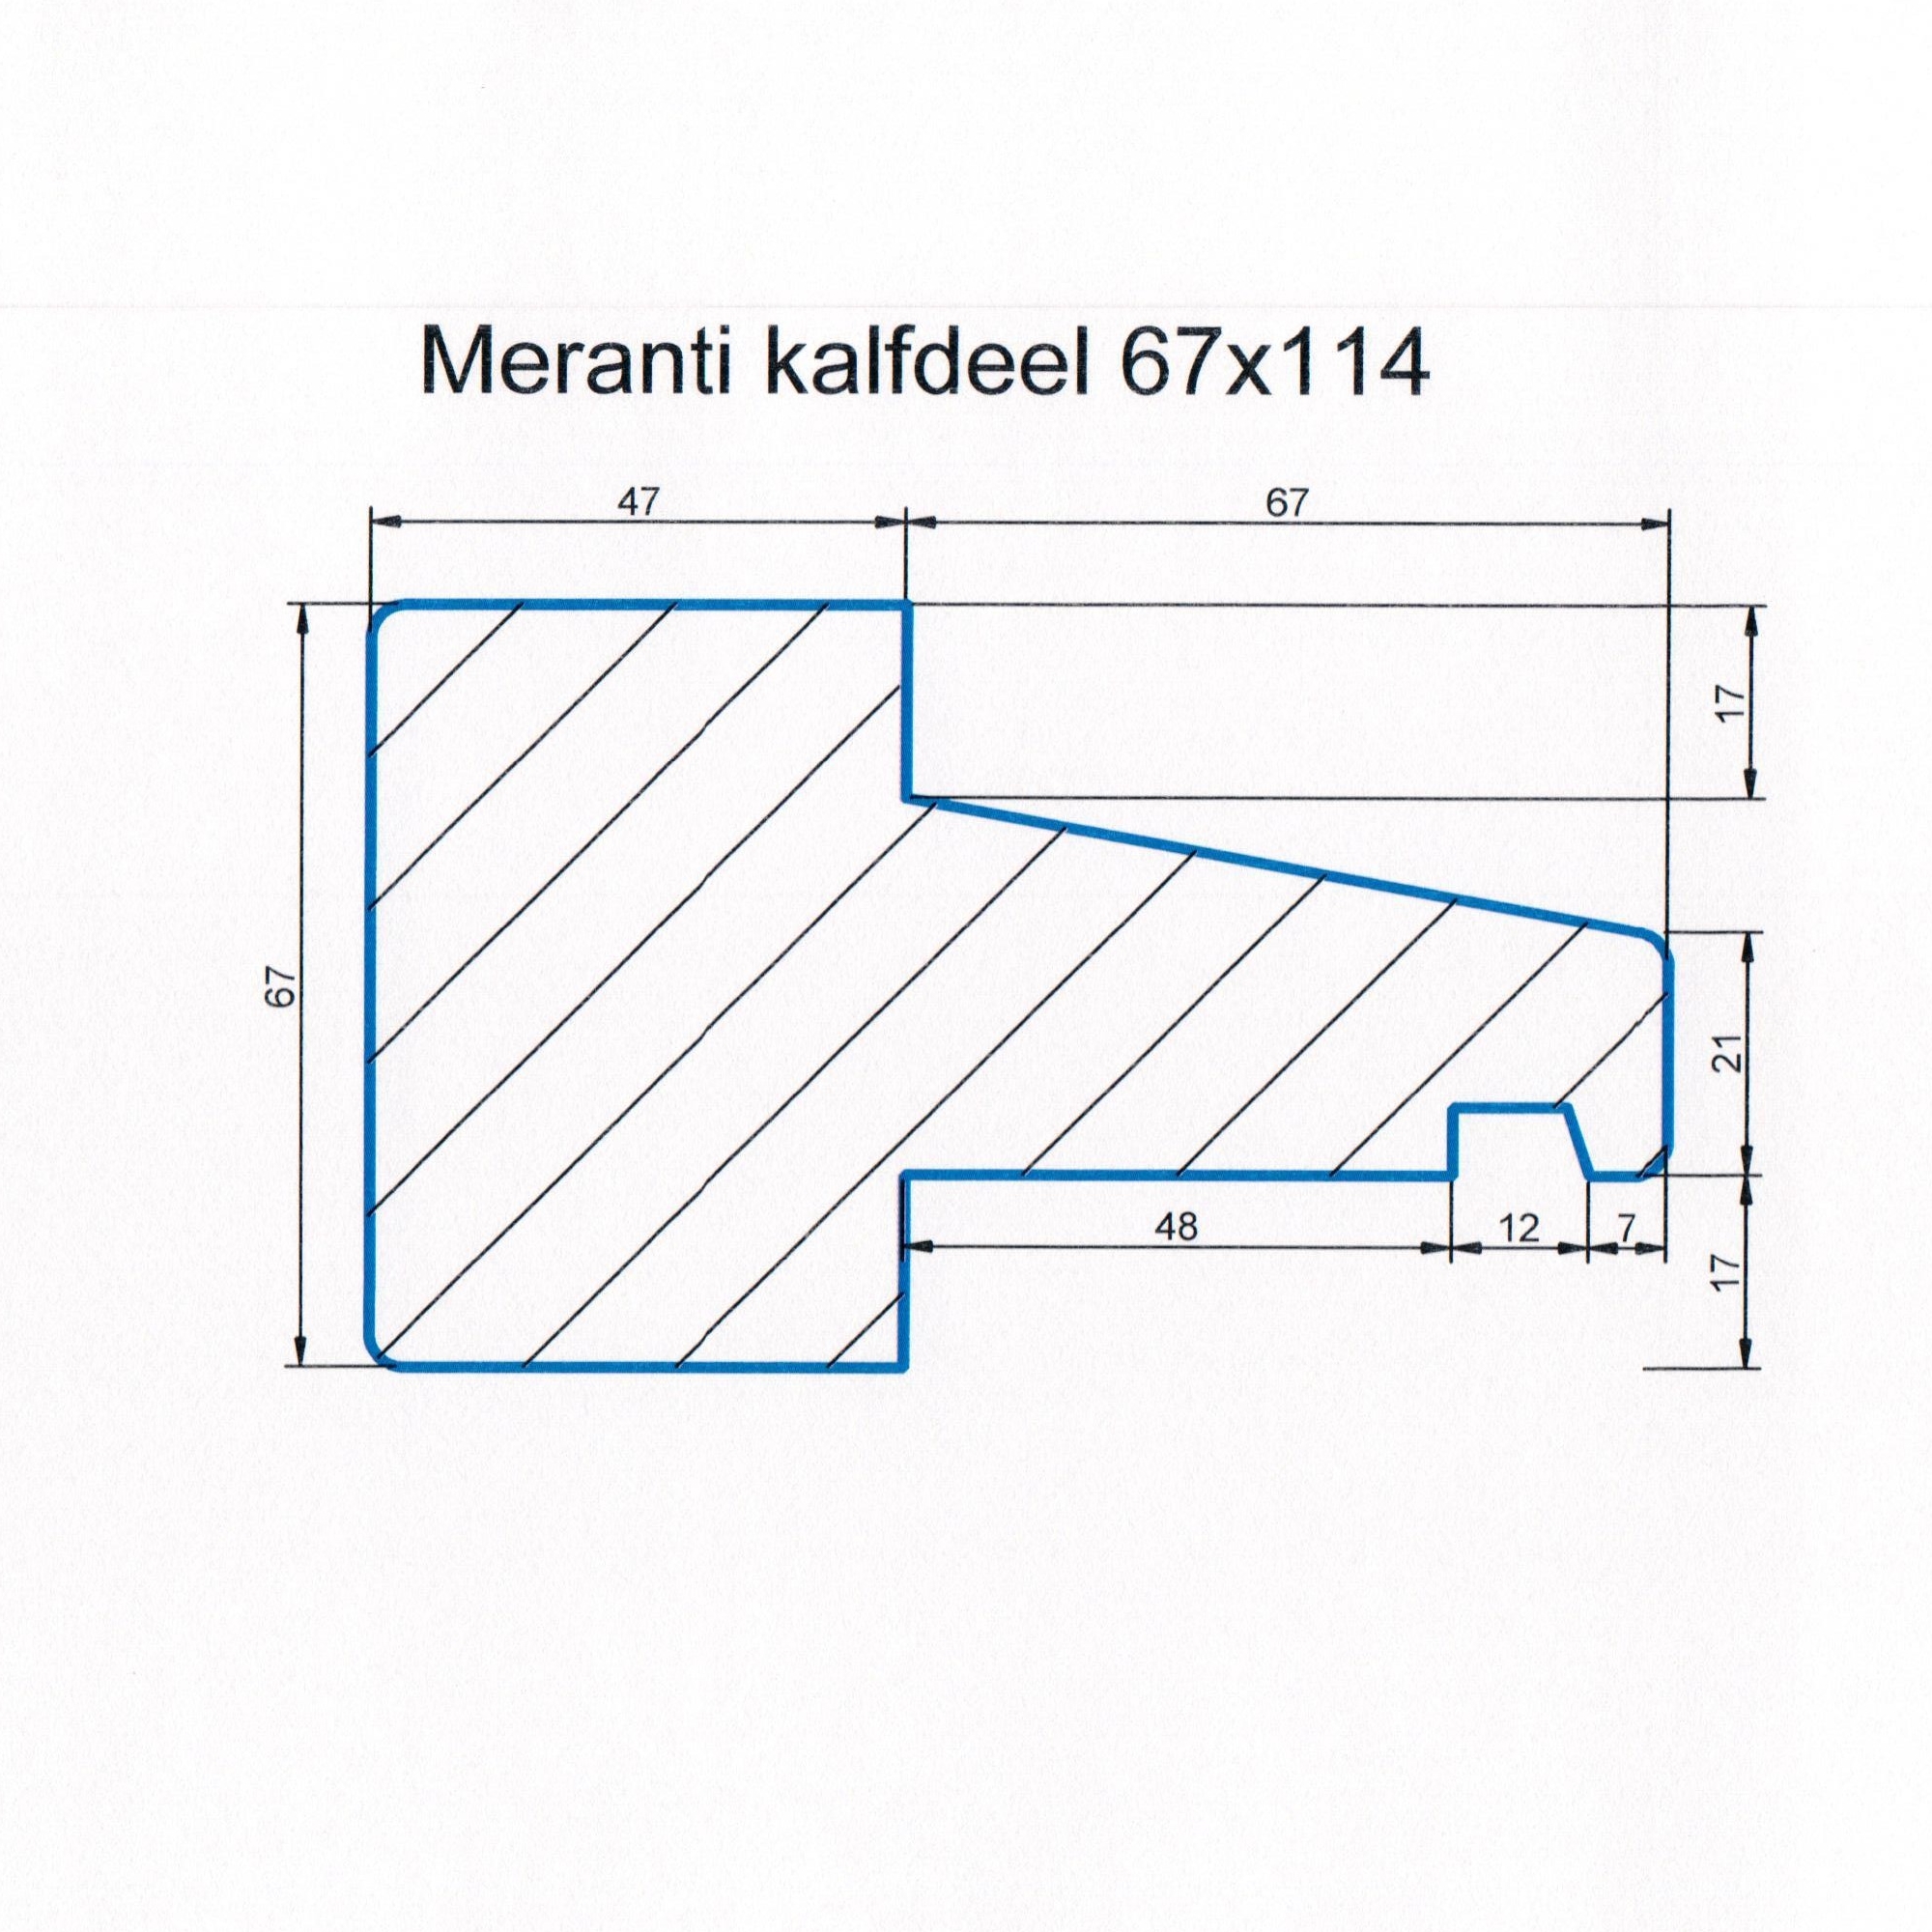 Meranti 67x114 kozijnhout Kalfdeel L=3050 mm